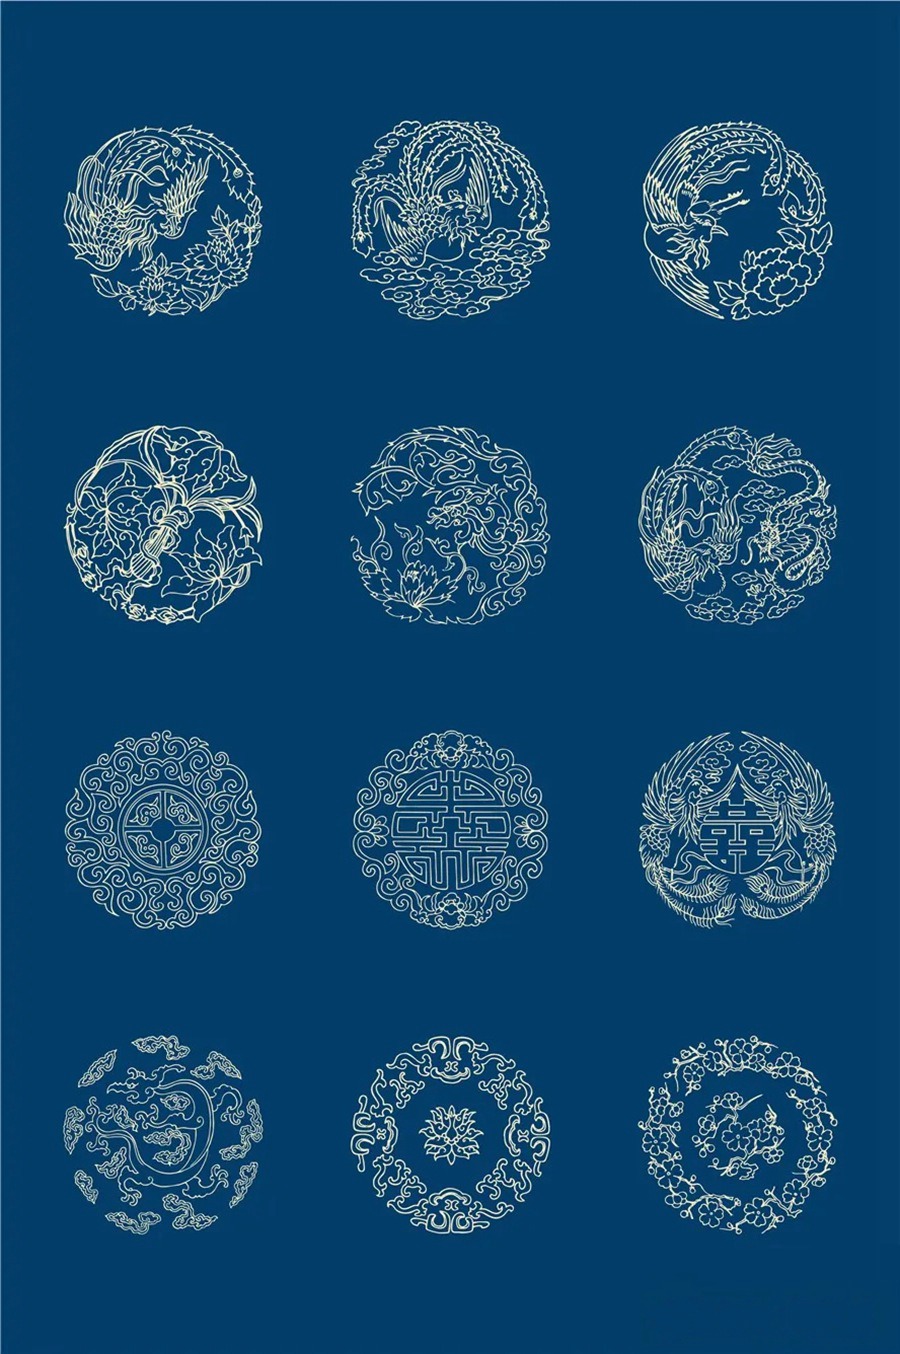 中国风传统古典青花瓷图案花纹图形纹样AI矢量模板花纹设计素材 图片素材 第19张